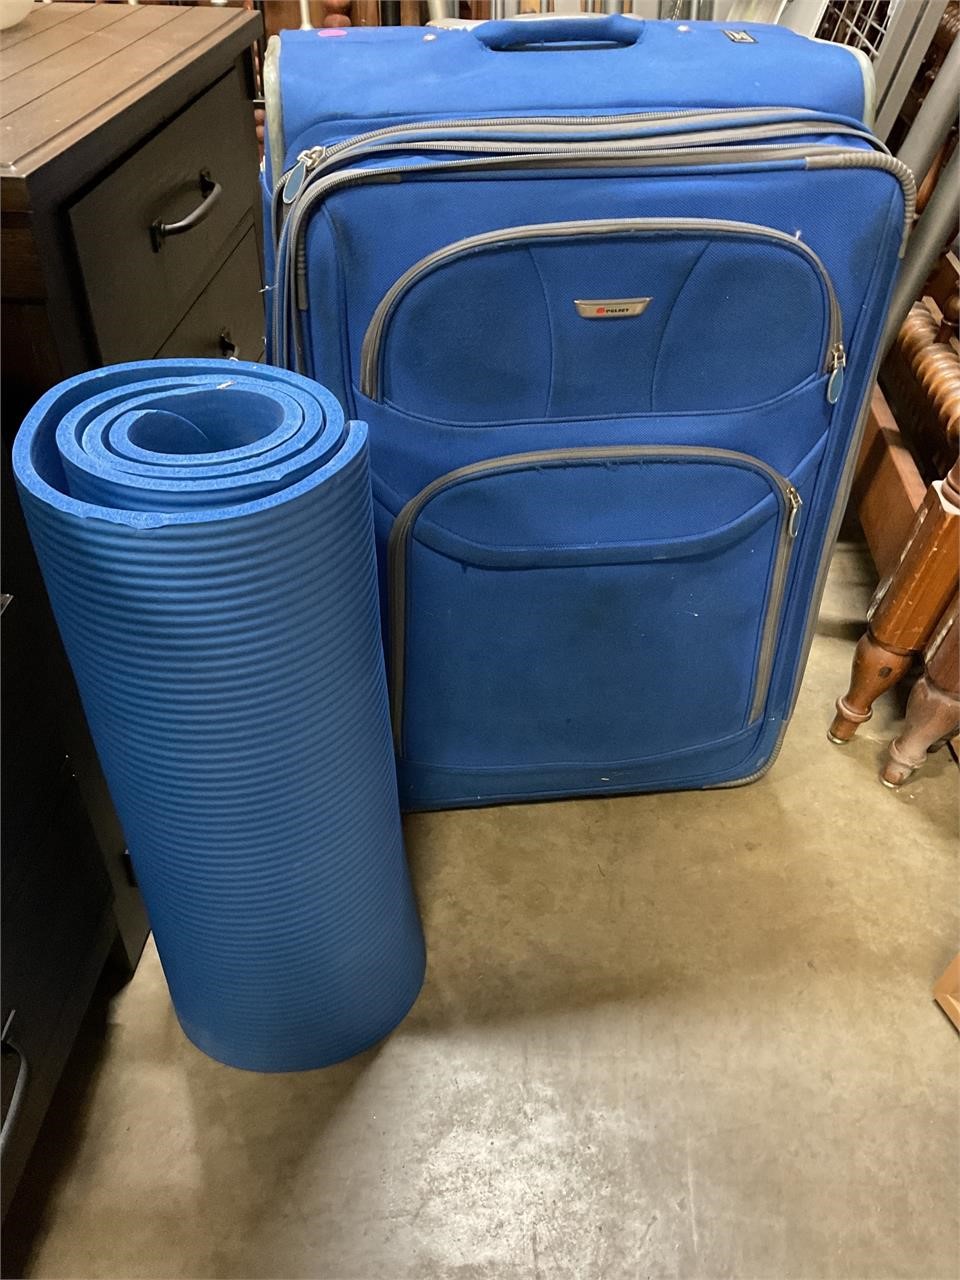 Delsey large size luggage & yoga mat